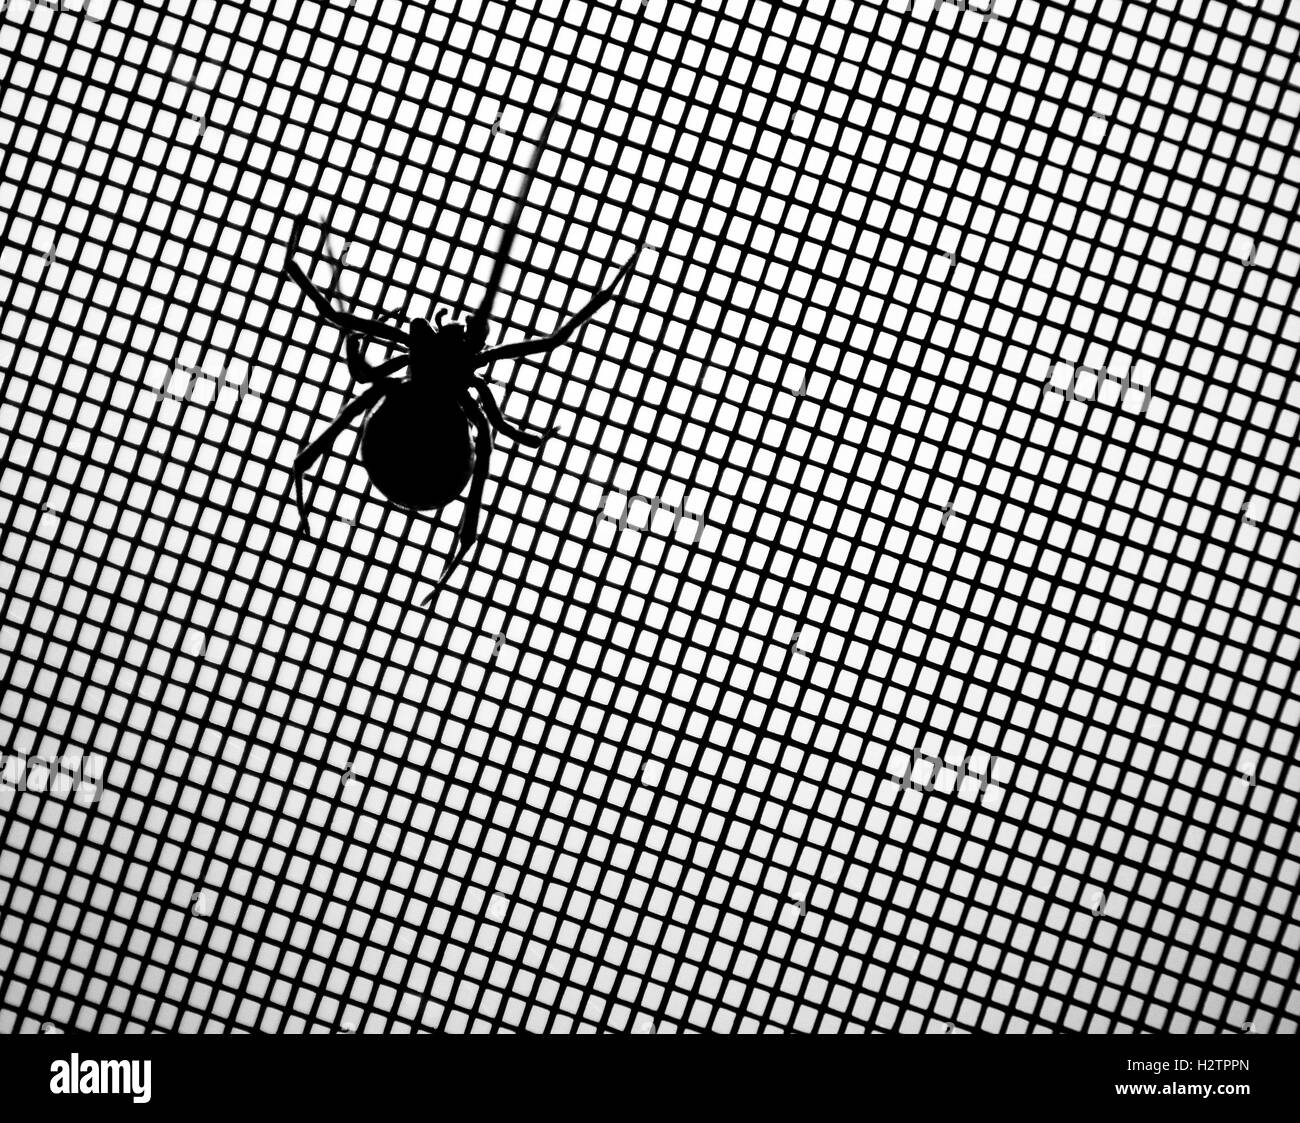 Araña viuda negra en la pantalla Detalle de miedo Foto de stock